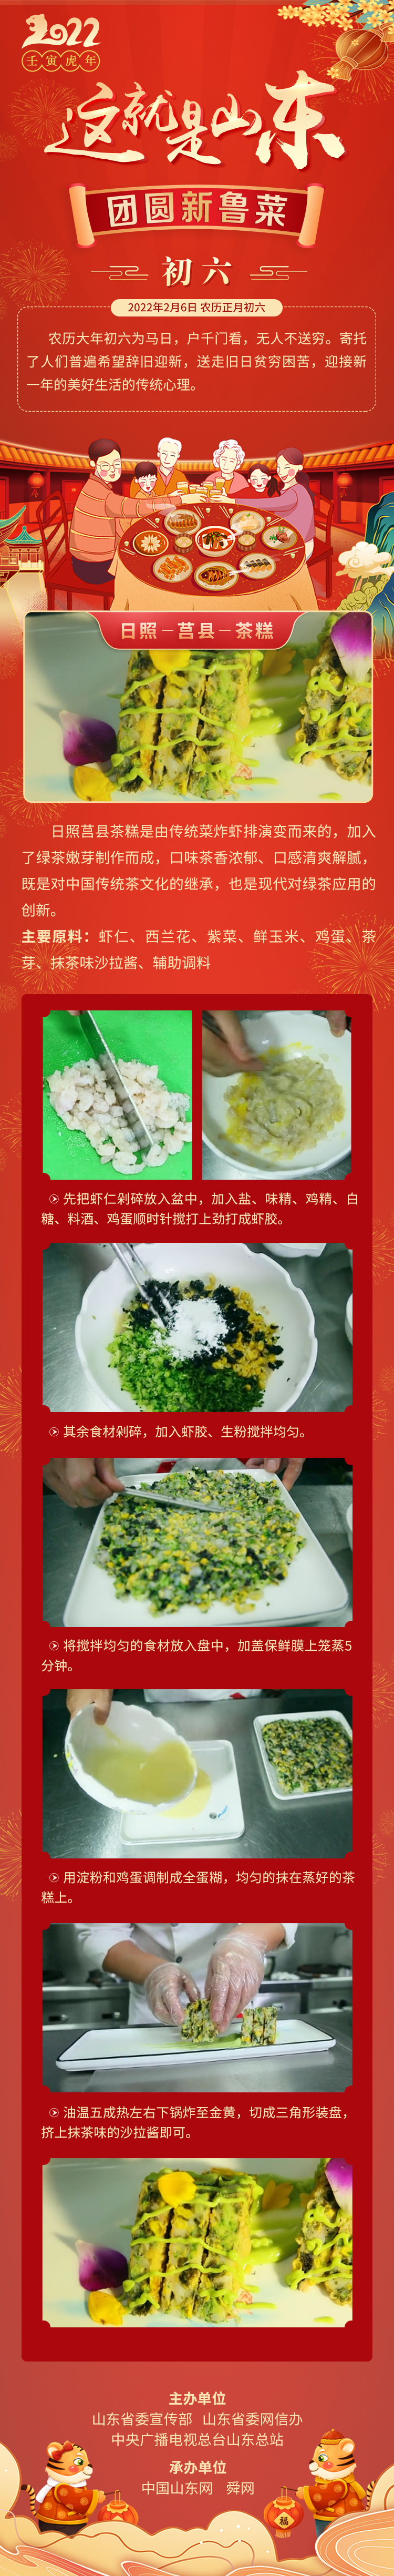 这就是山东·团圆新鲁菜——日照-莒县-茶糕